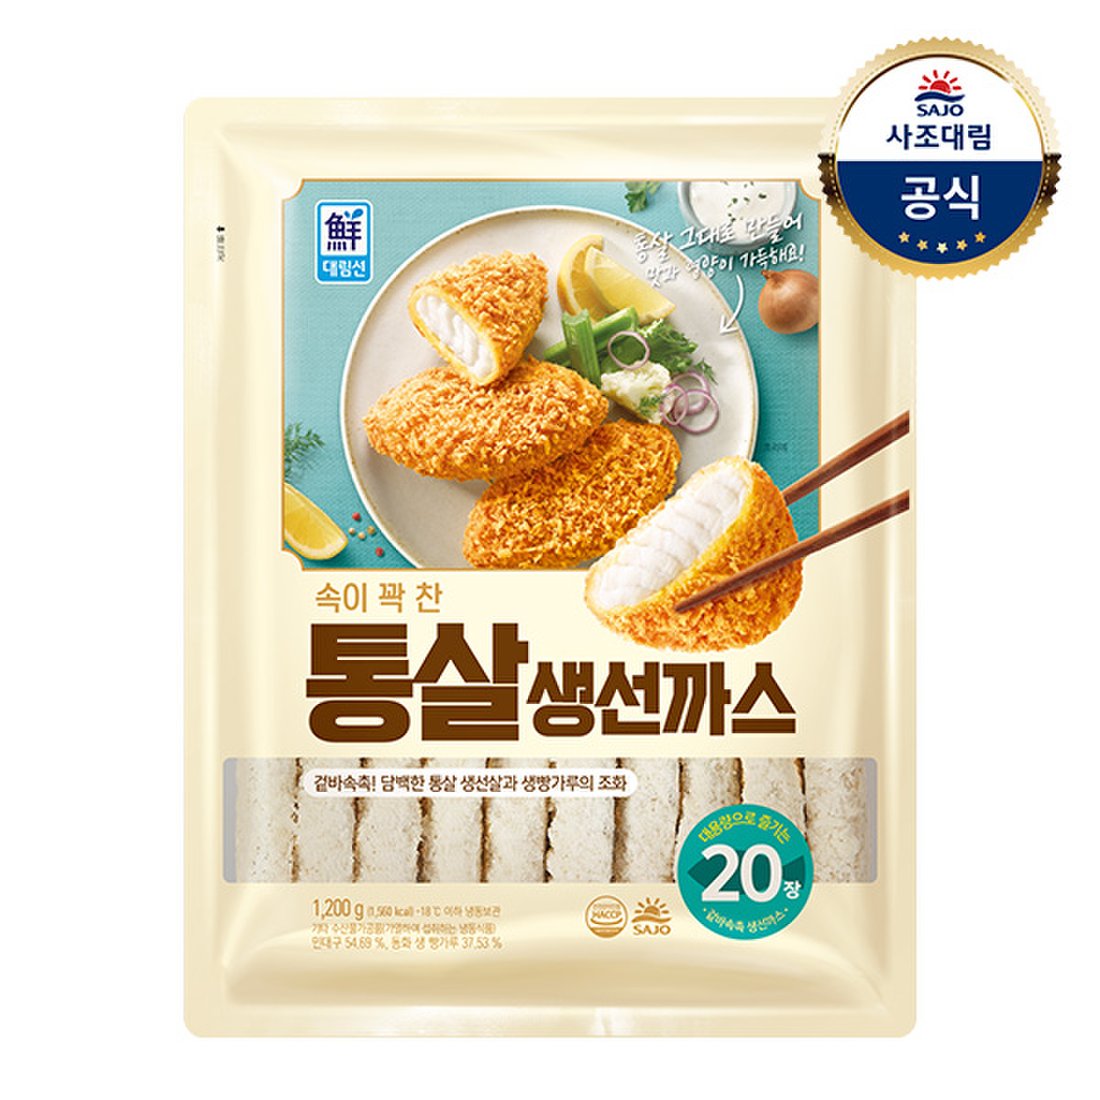 SJ - Fish Cutlet 흰살 생선까스 600G